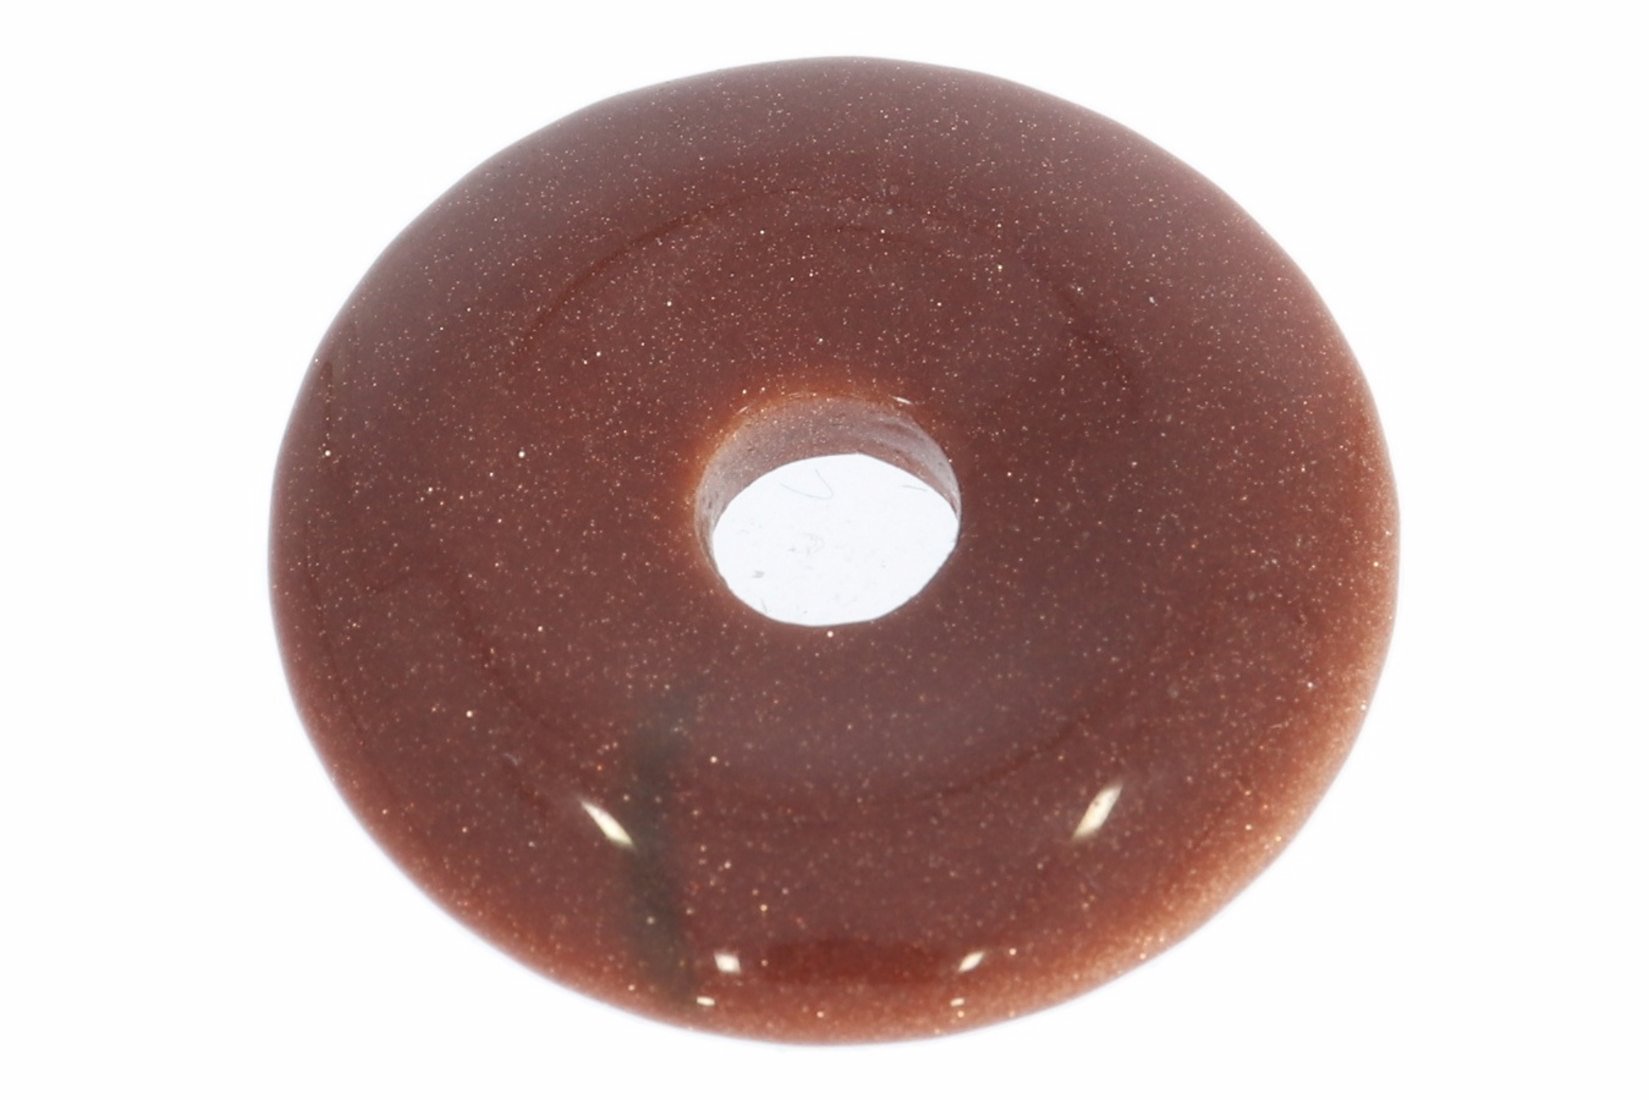 UNIKAT - Goldfluss Donut Schmuck Mineralien Anhänger 30mm - 35398